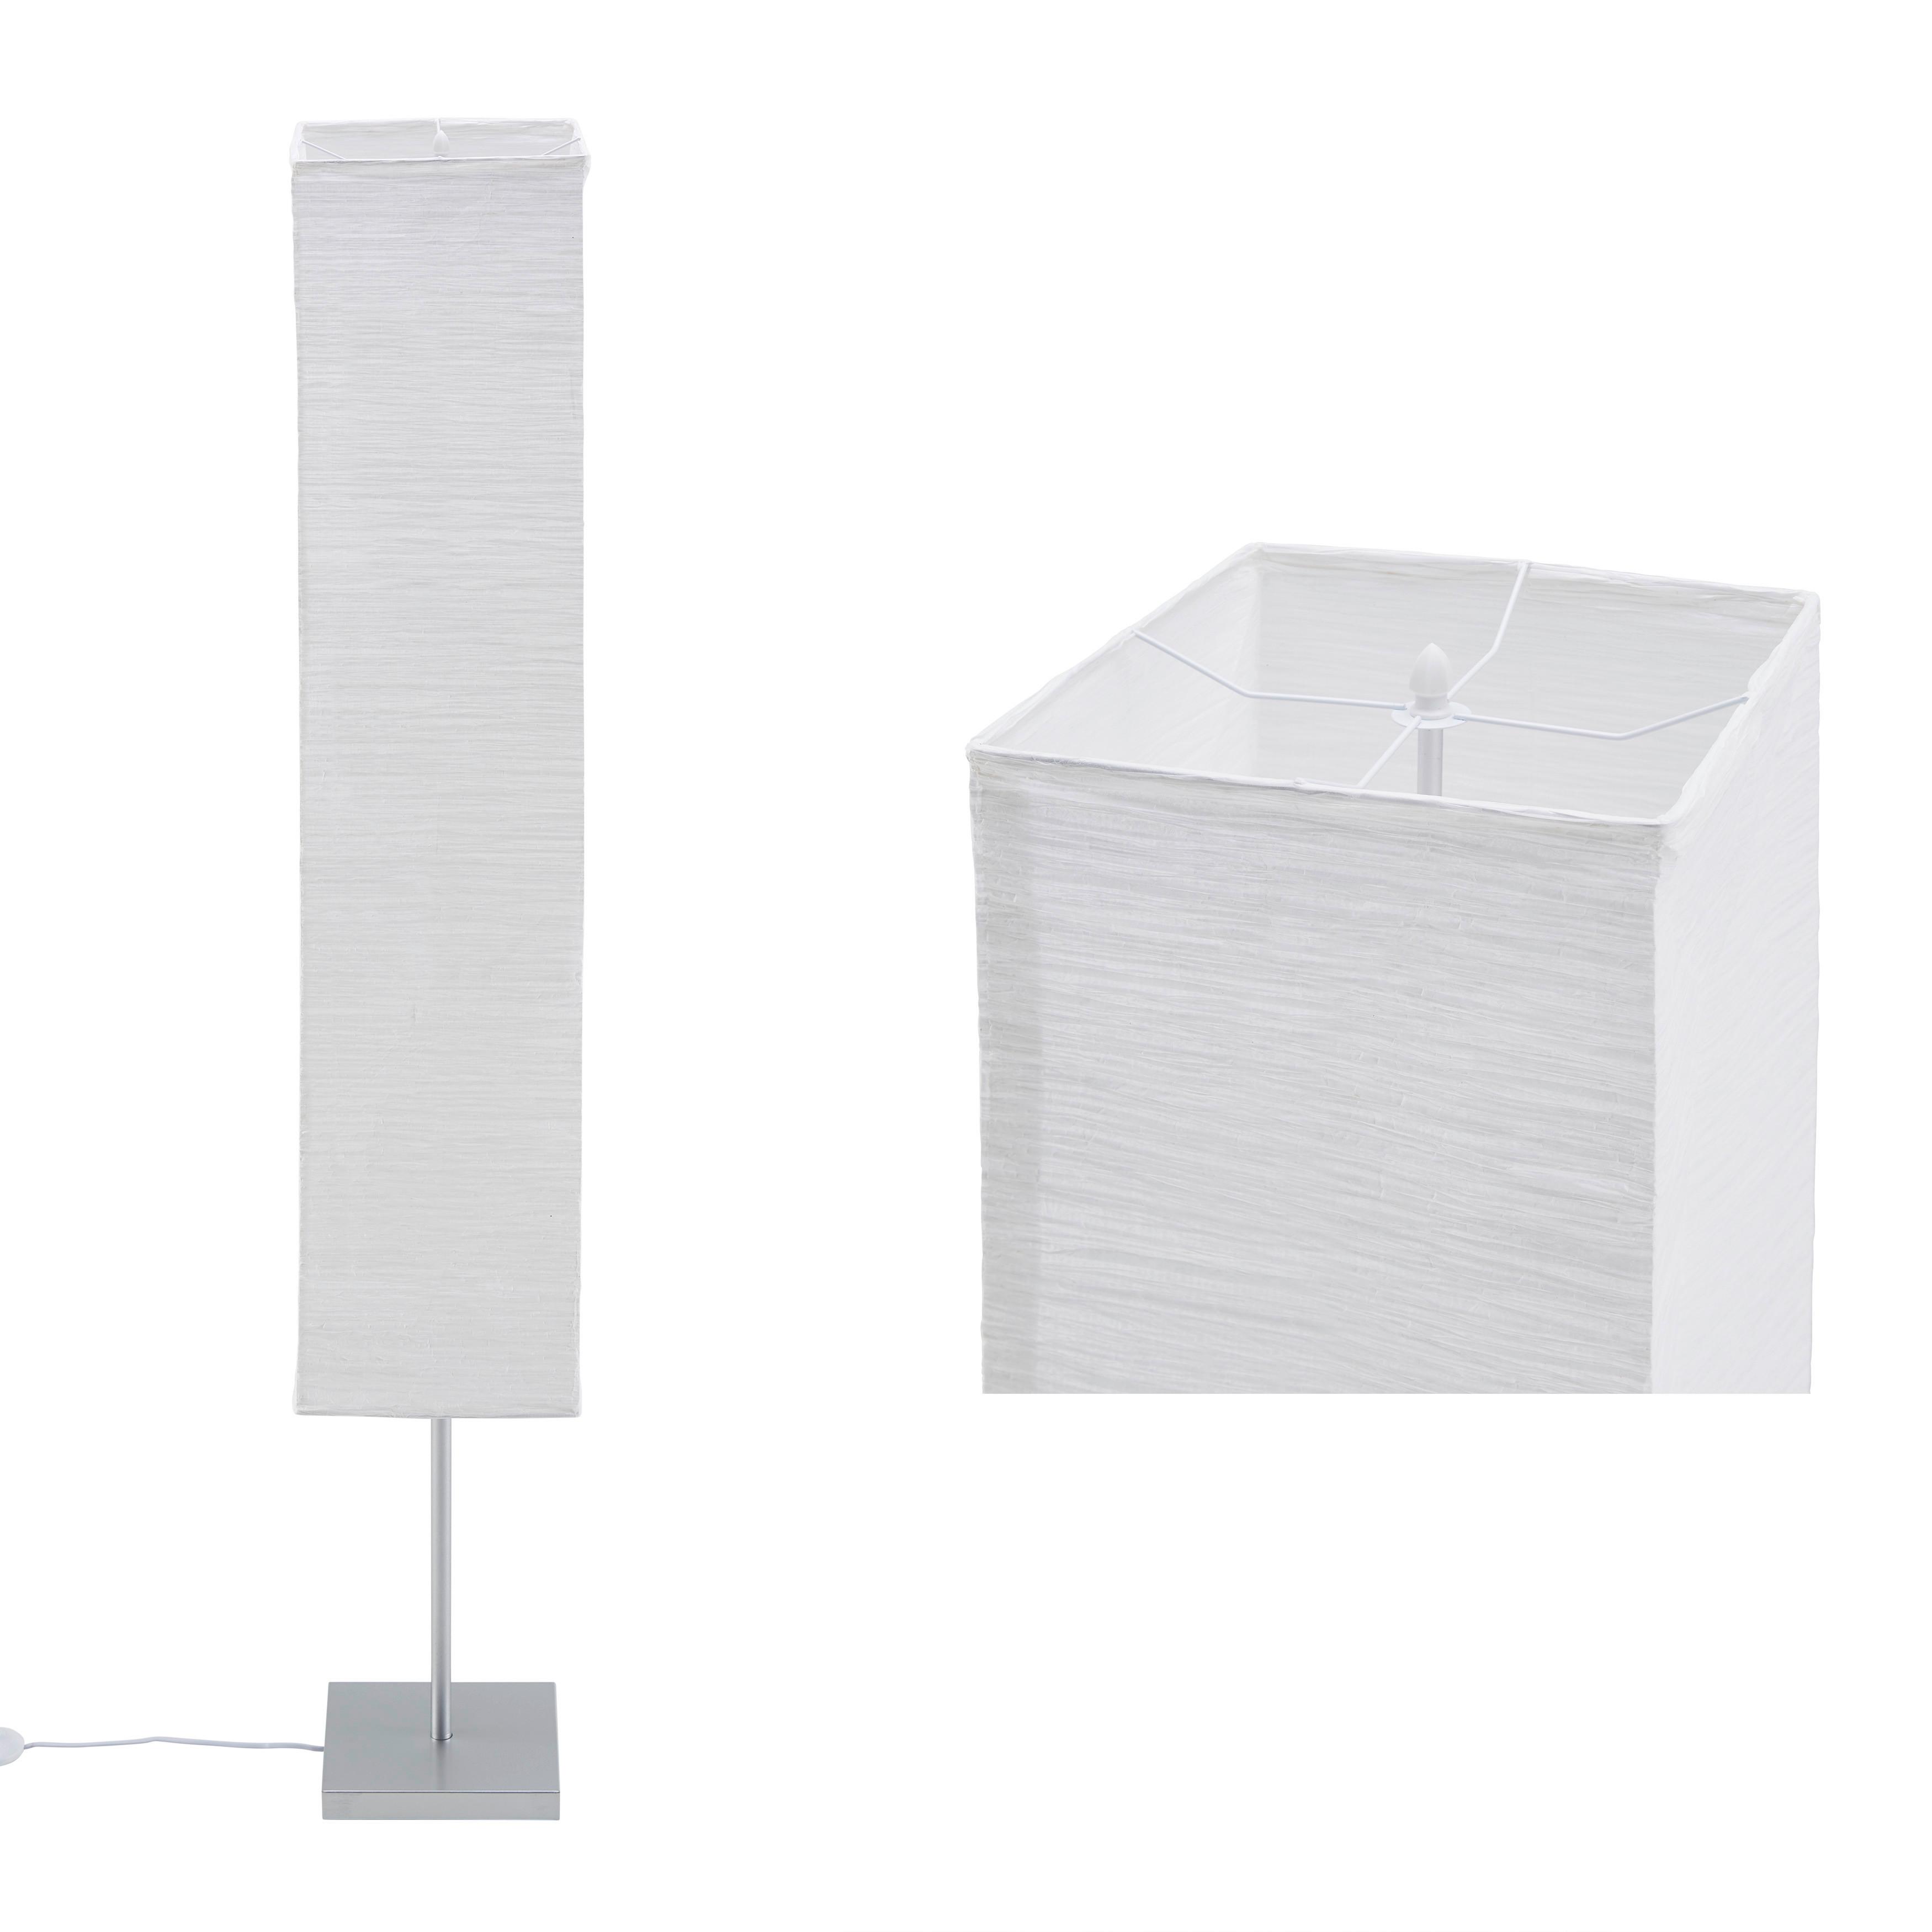 Stehleuchte Antonio max. 40 Watt - Silberfarben/Weiß, KONVENTIONELL, Papier/Metall (25,5/155/25,5cm) - Modern Living